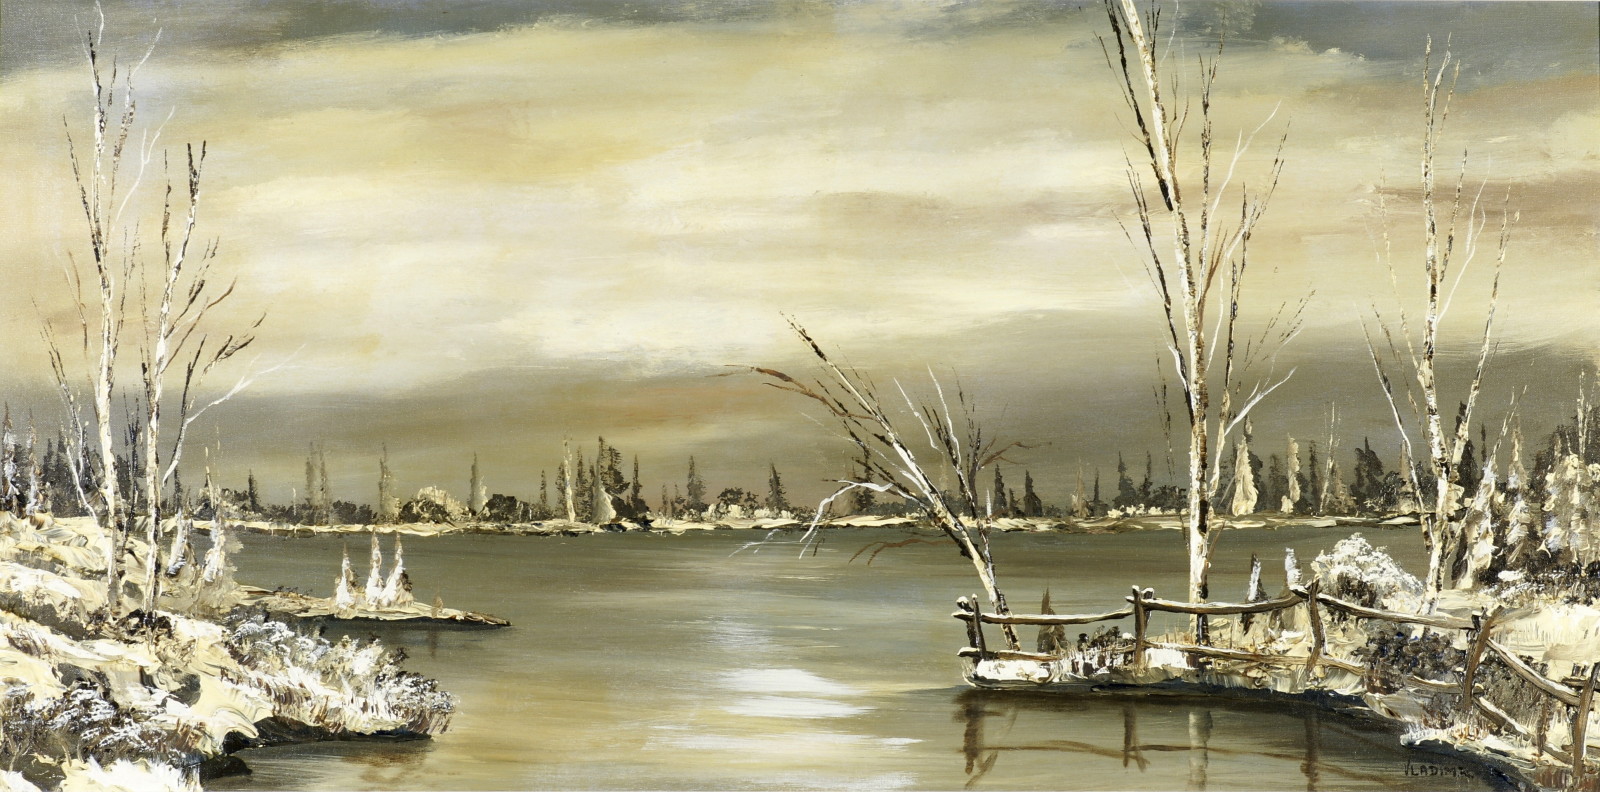 แม่น้ำ, ฤดูหนาว, ภูมิประเทศ, ต้นไม้, น้ำมัน, ผ้าใบ, Ovchinnikov Vladimir Ivanovich